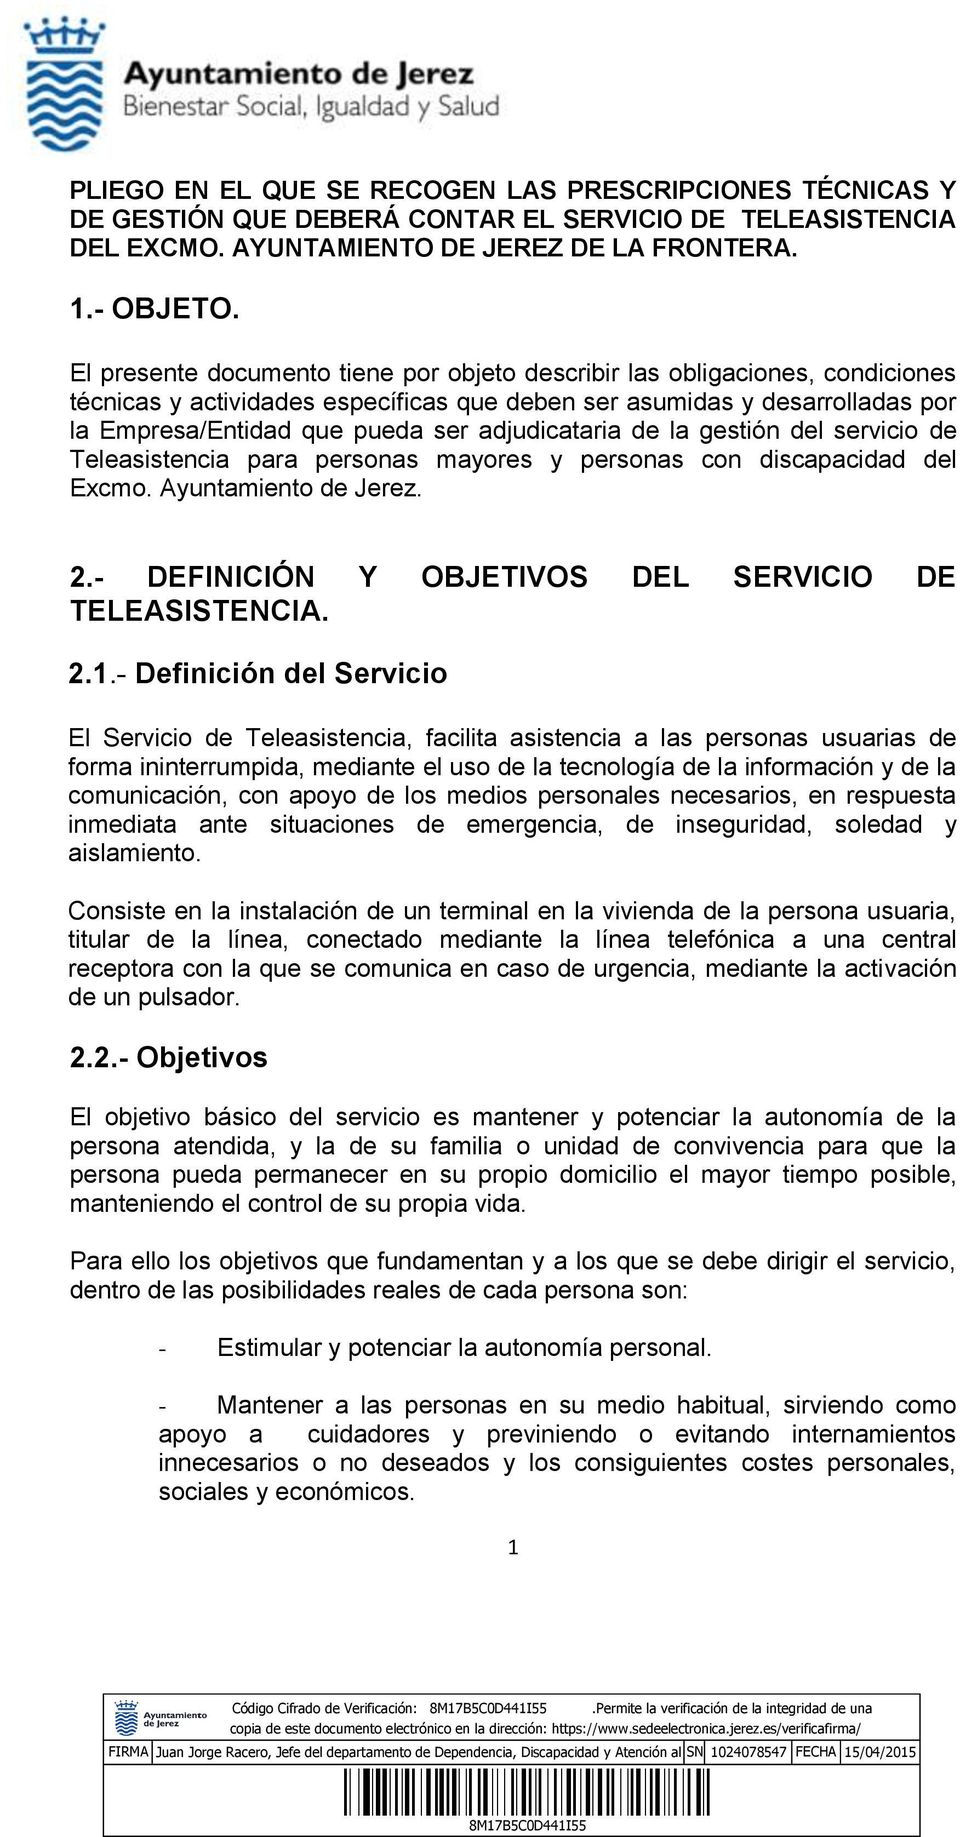 adjudicataria de la gestión del servicio de Teleasistencia para personas mayores y personas con discapacidad del Excmo. Ayuntamiento de Jerez. 2.